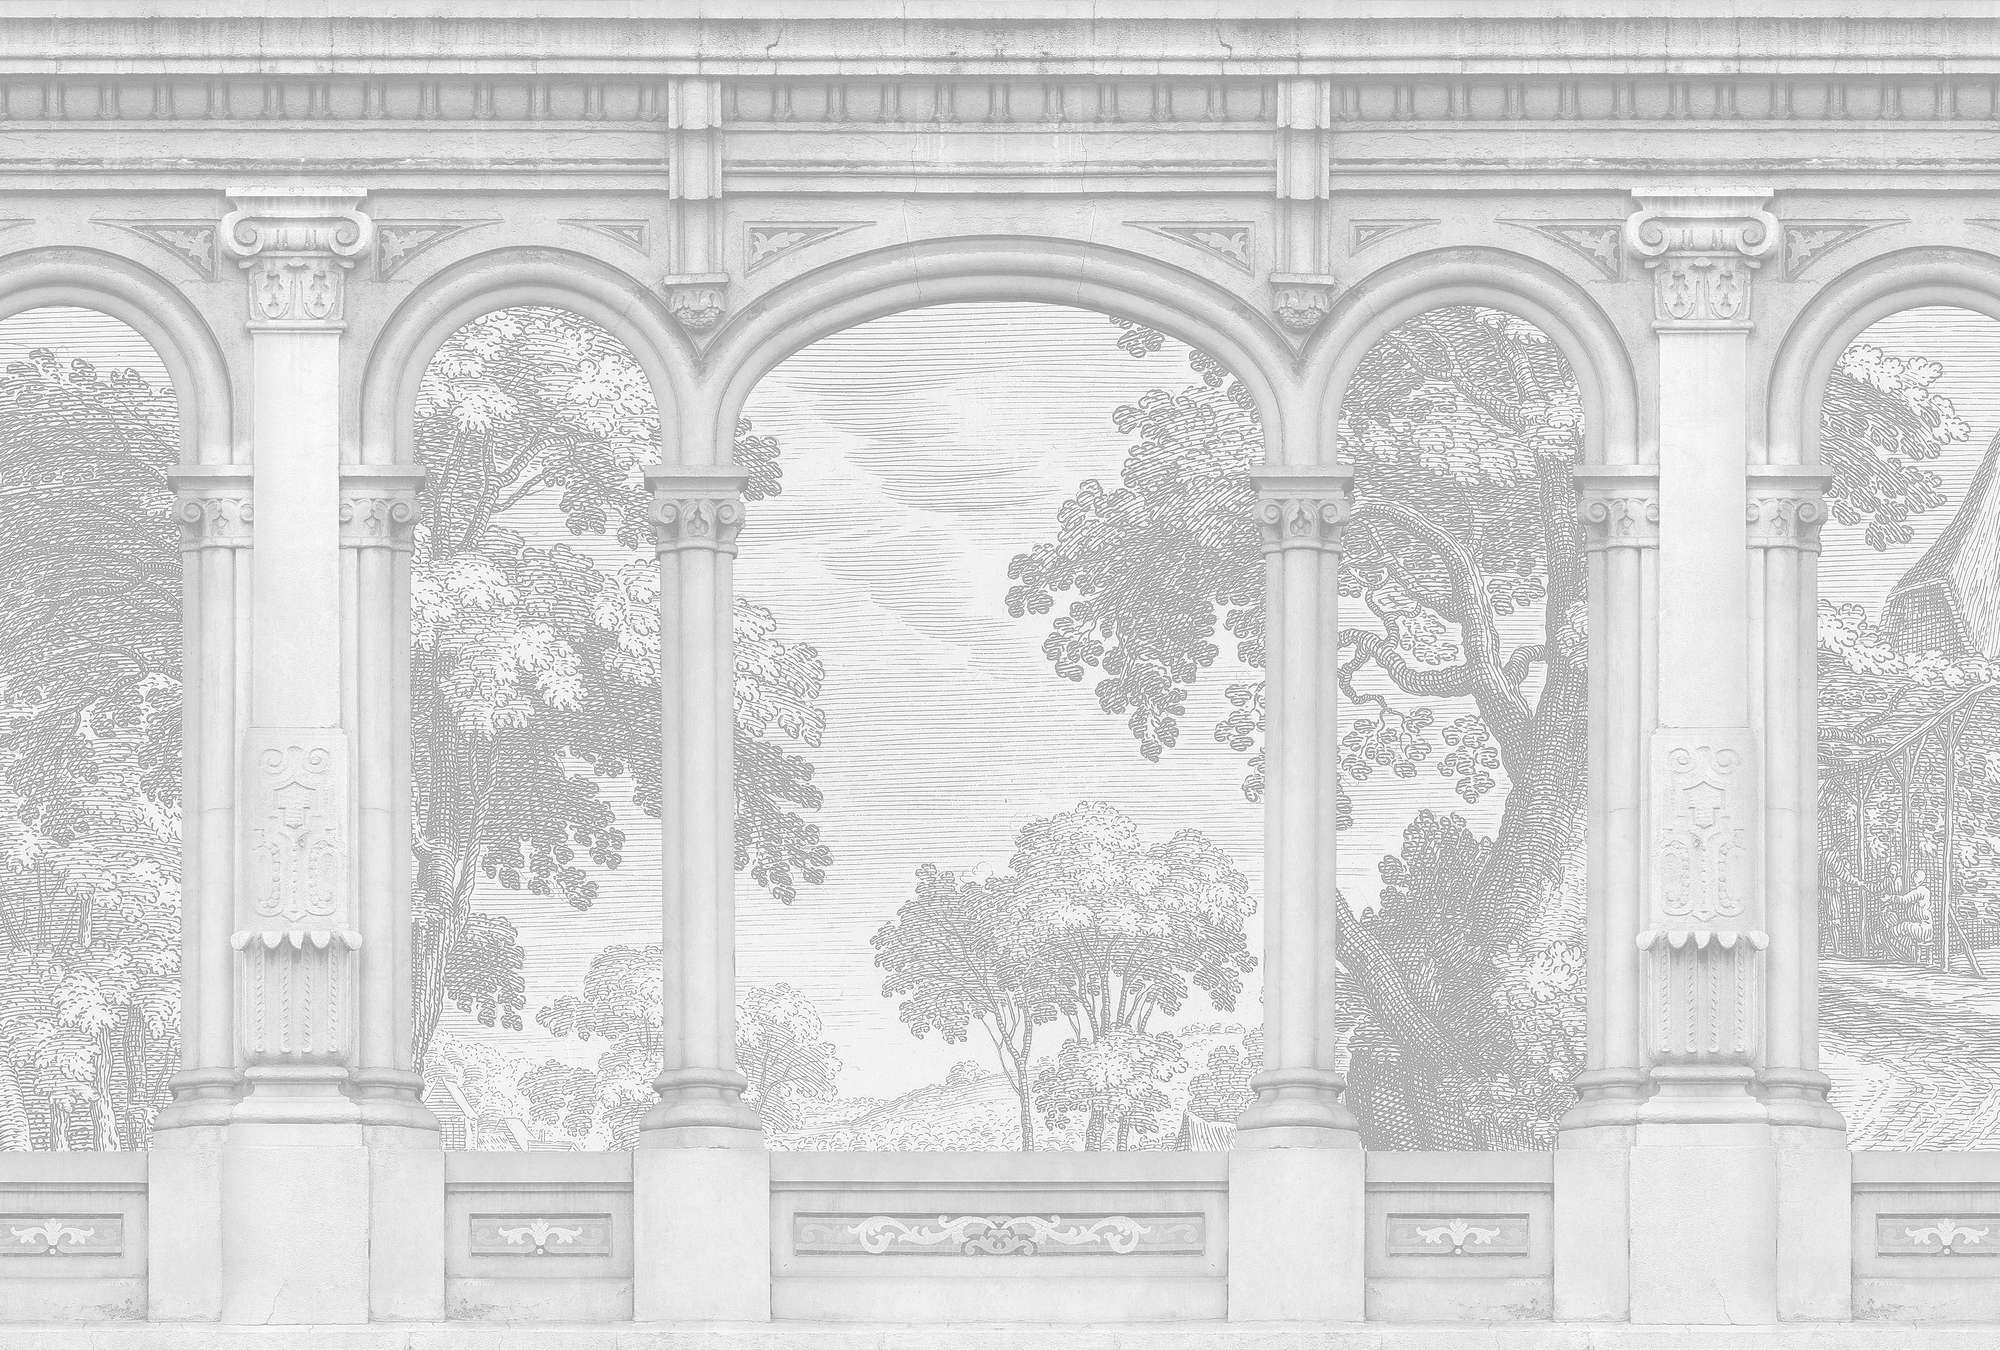             Roma 1 - Papier peint gris Historic Design avec fenêtre en arc de cercle
        